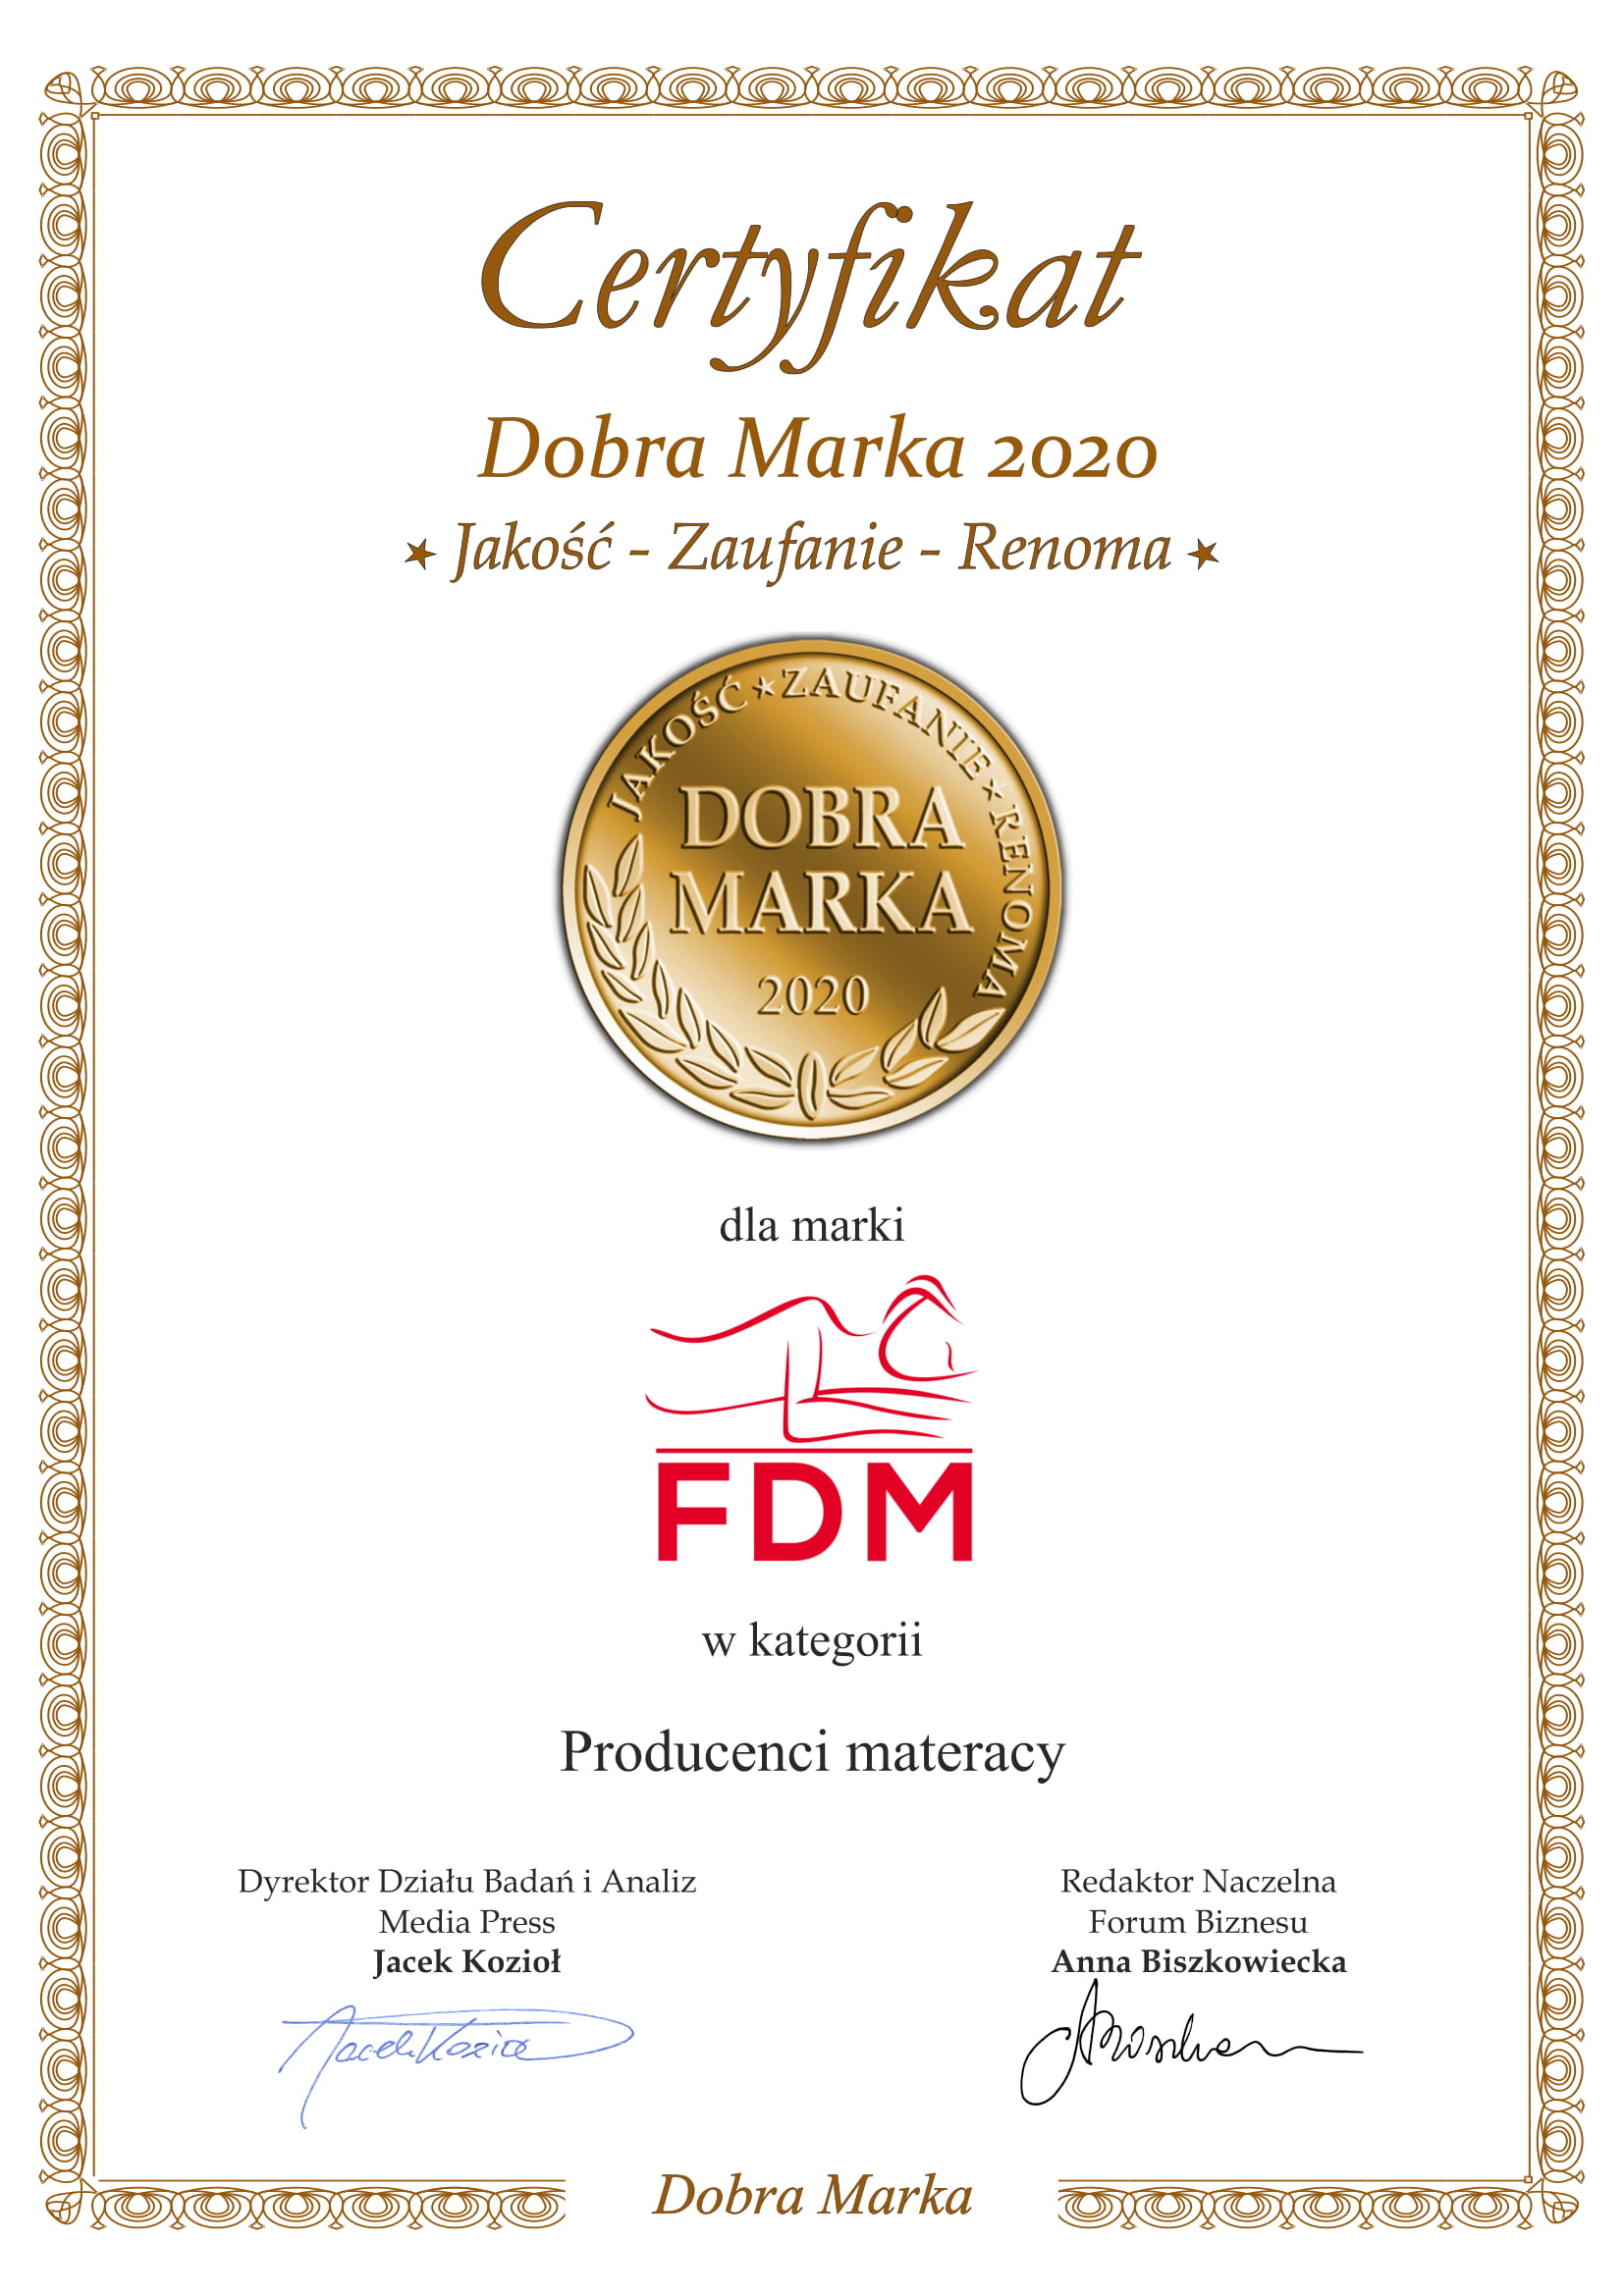 Certyfikat Dobra Marka 2020 dla FDM